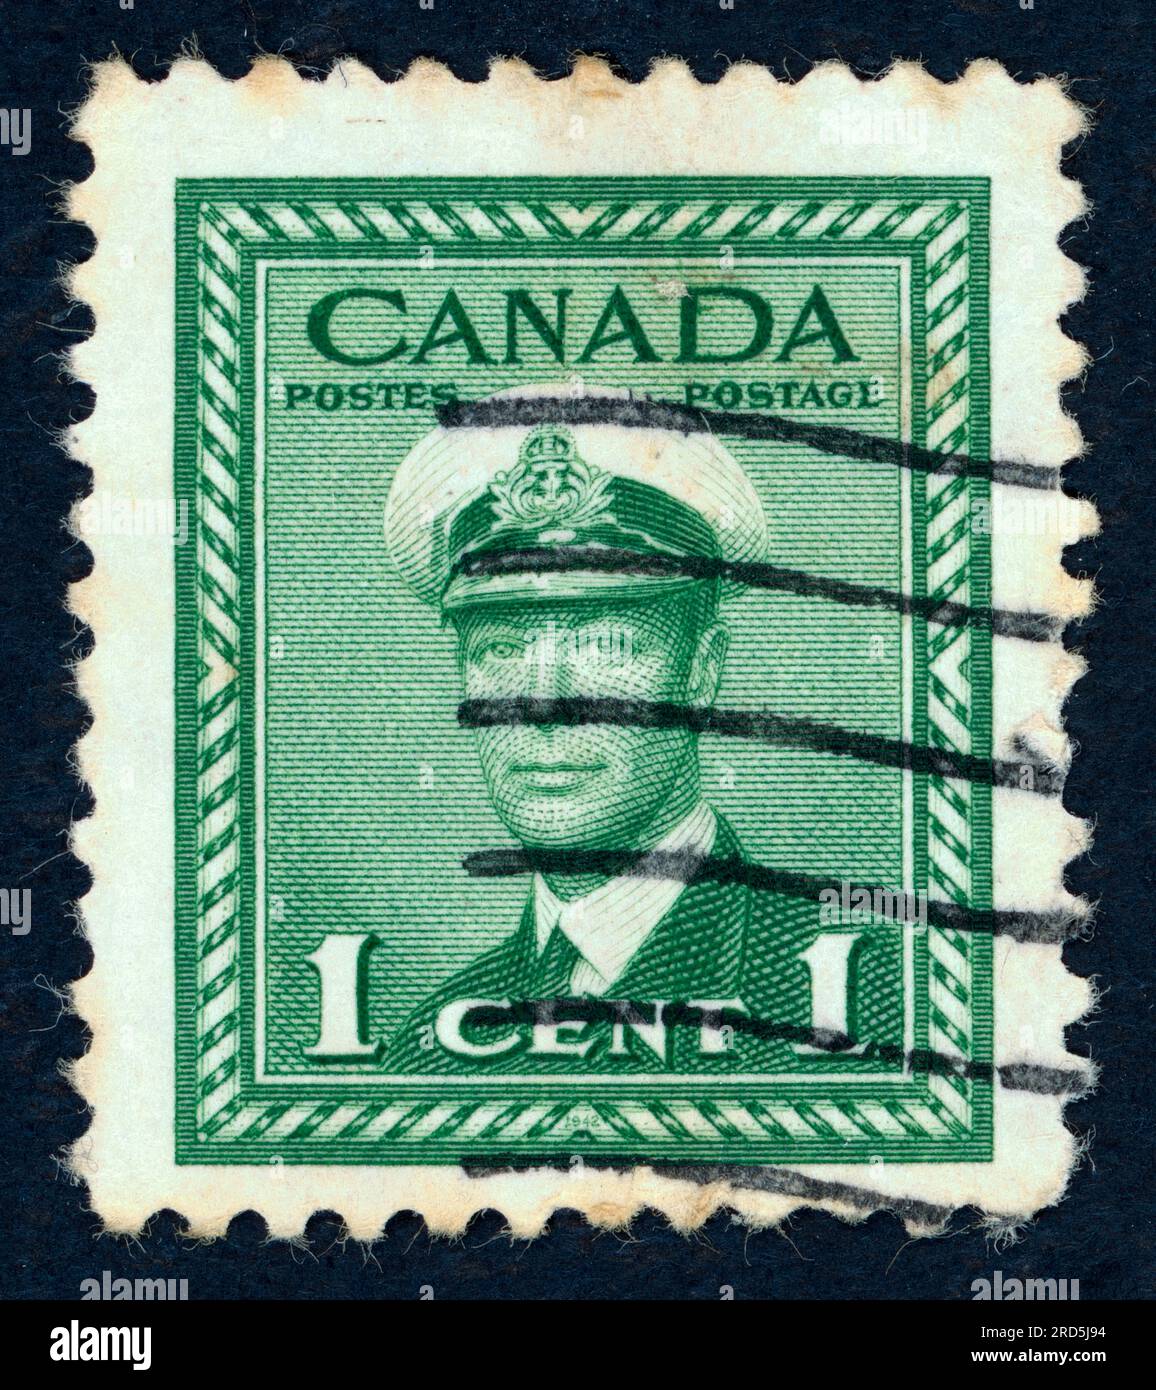 George VI (Albert Frederick Arthur George ; 1895 – 1952), roi du Royaume-Uni et des dominions du Commonwealth britannique de 1936 jusqu'à sa mort en 1952. Timbre-poste émis au Canada en 1948. Banque D'Images